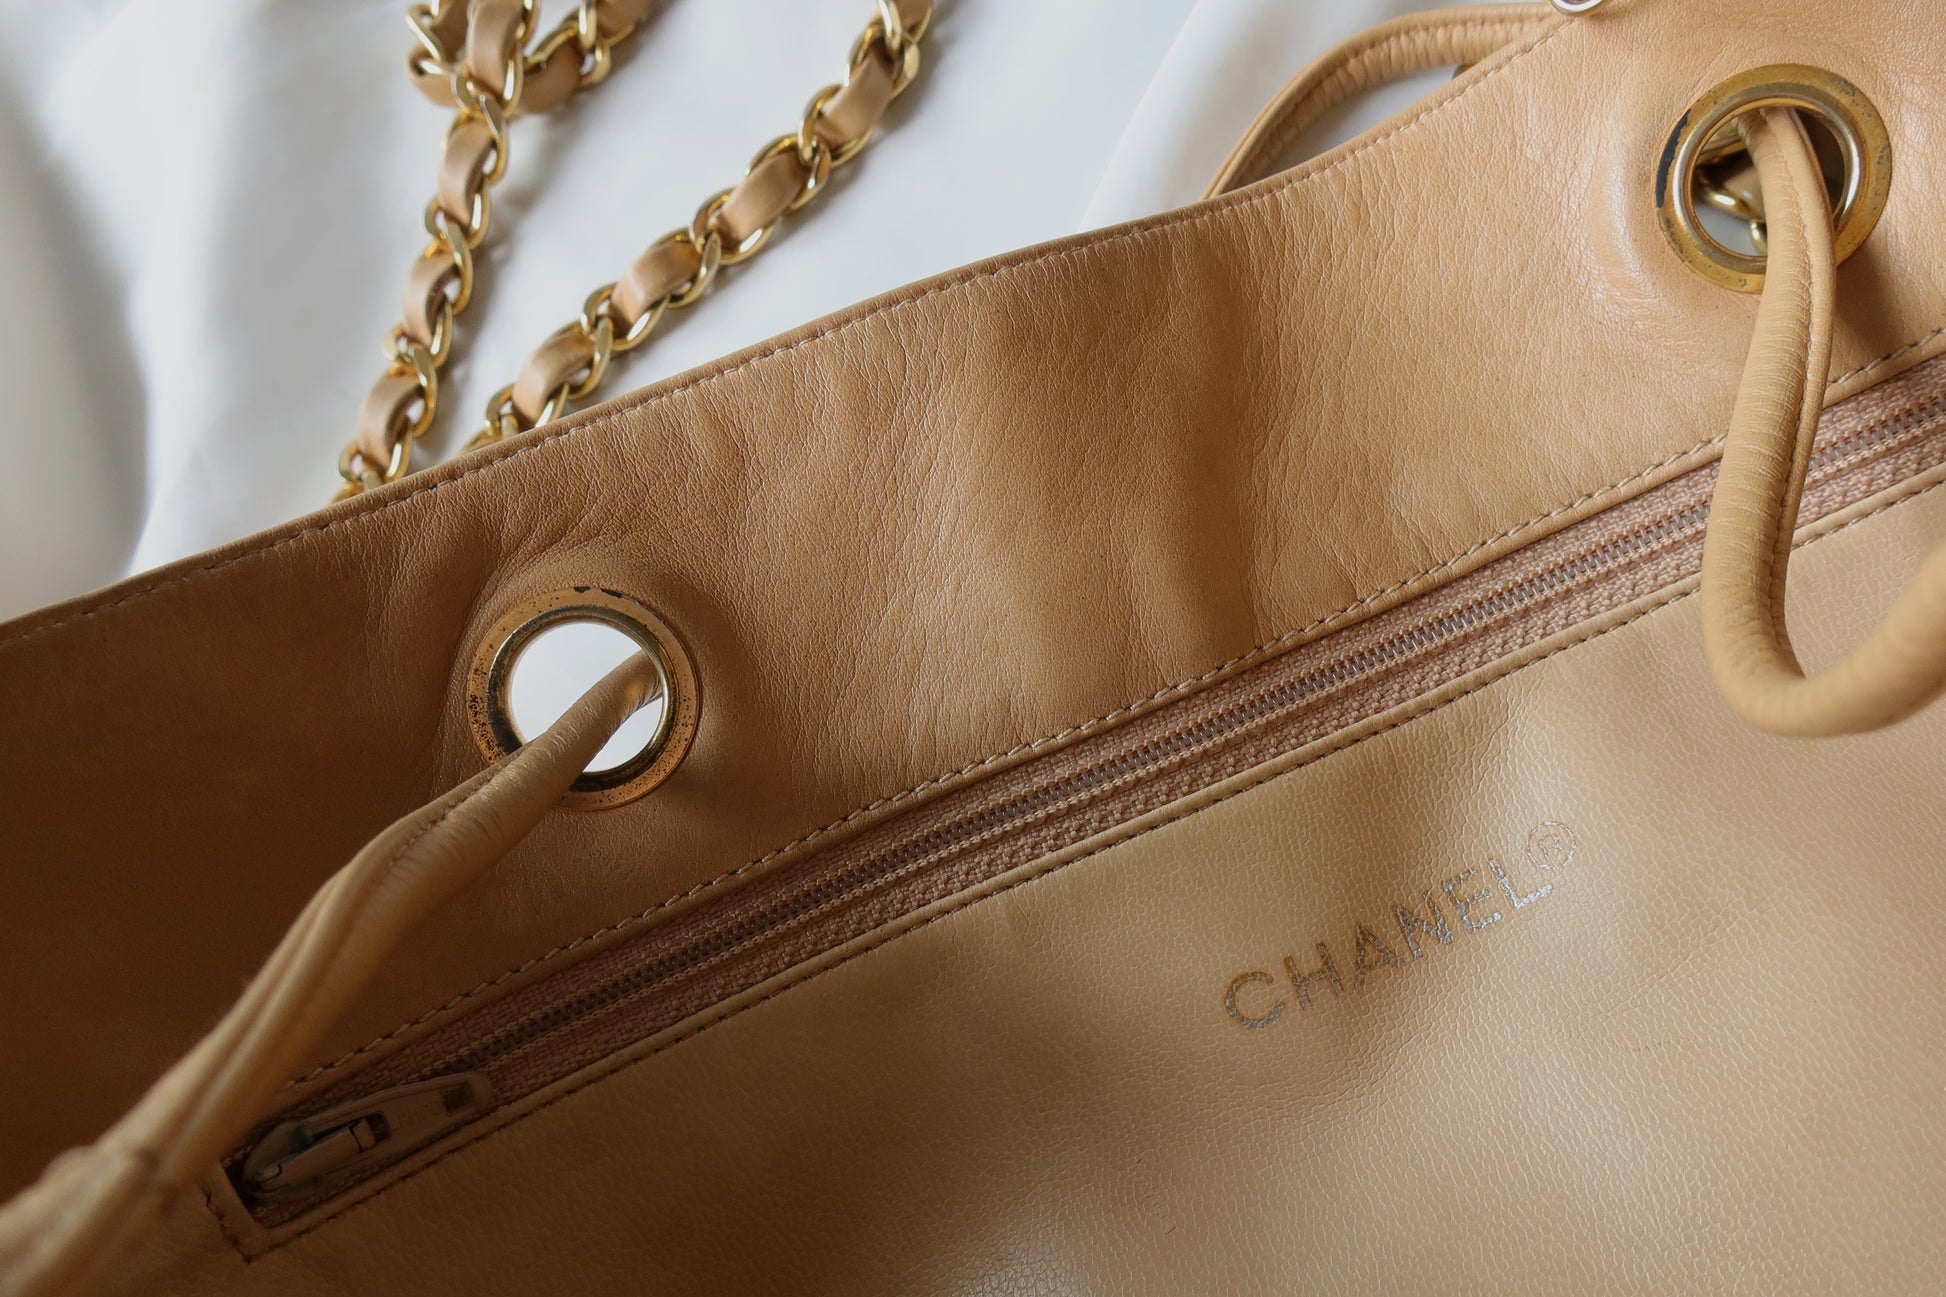 CHANEL, Bags, Chanel 9 Woc In Caramel Lambskin